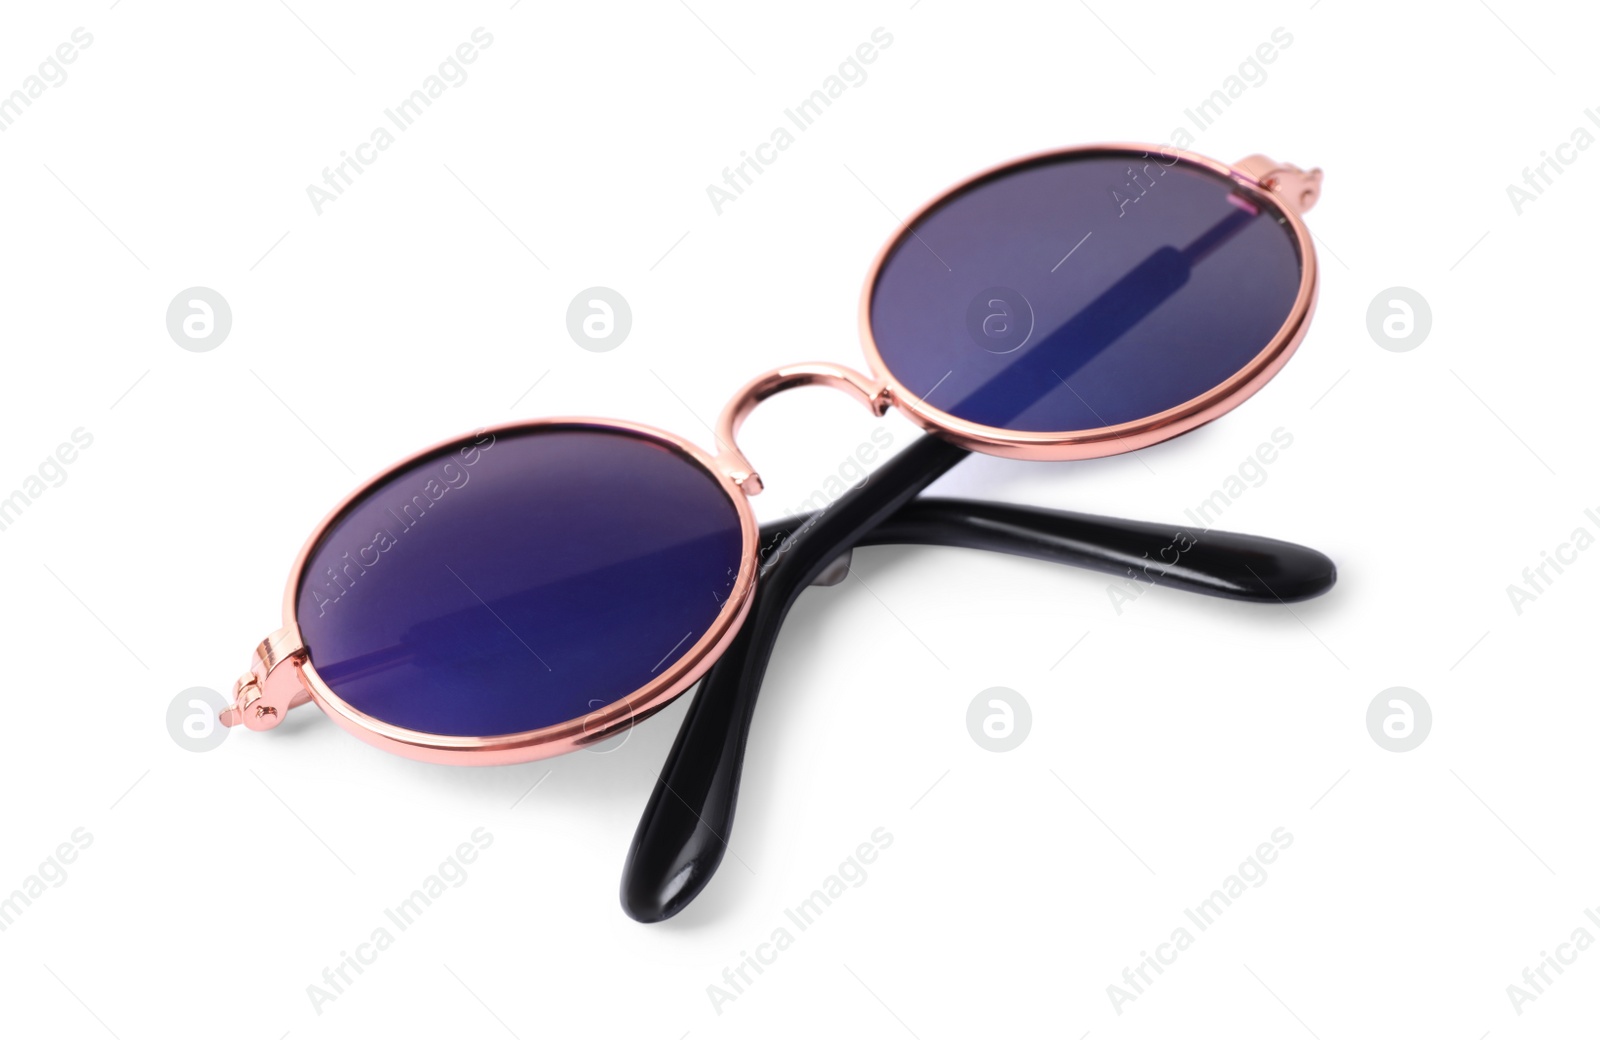 Photo of New stylish round sunglasses isolated on white